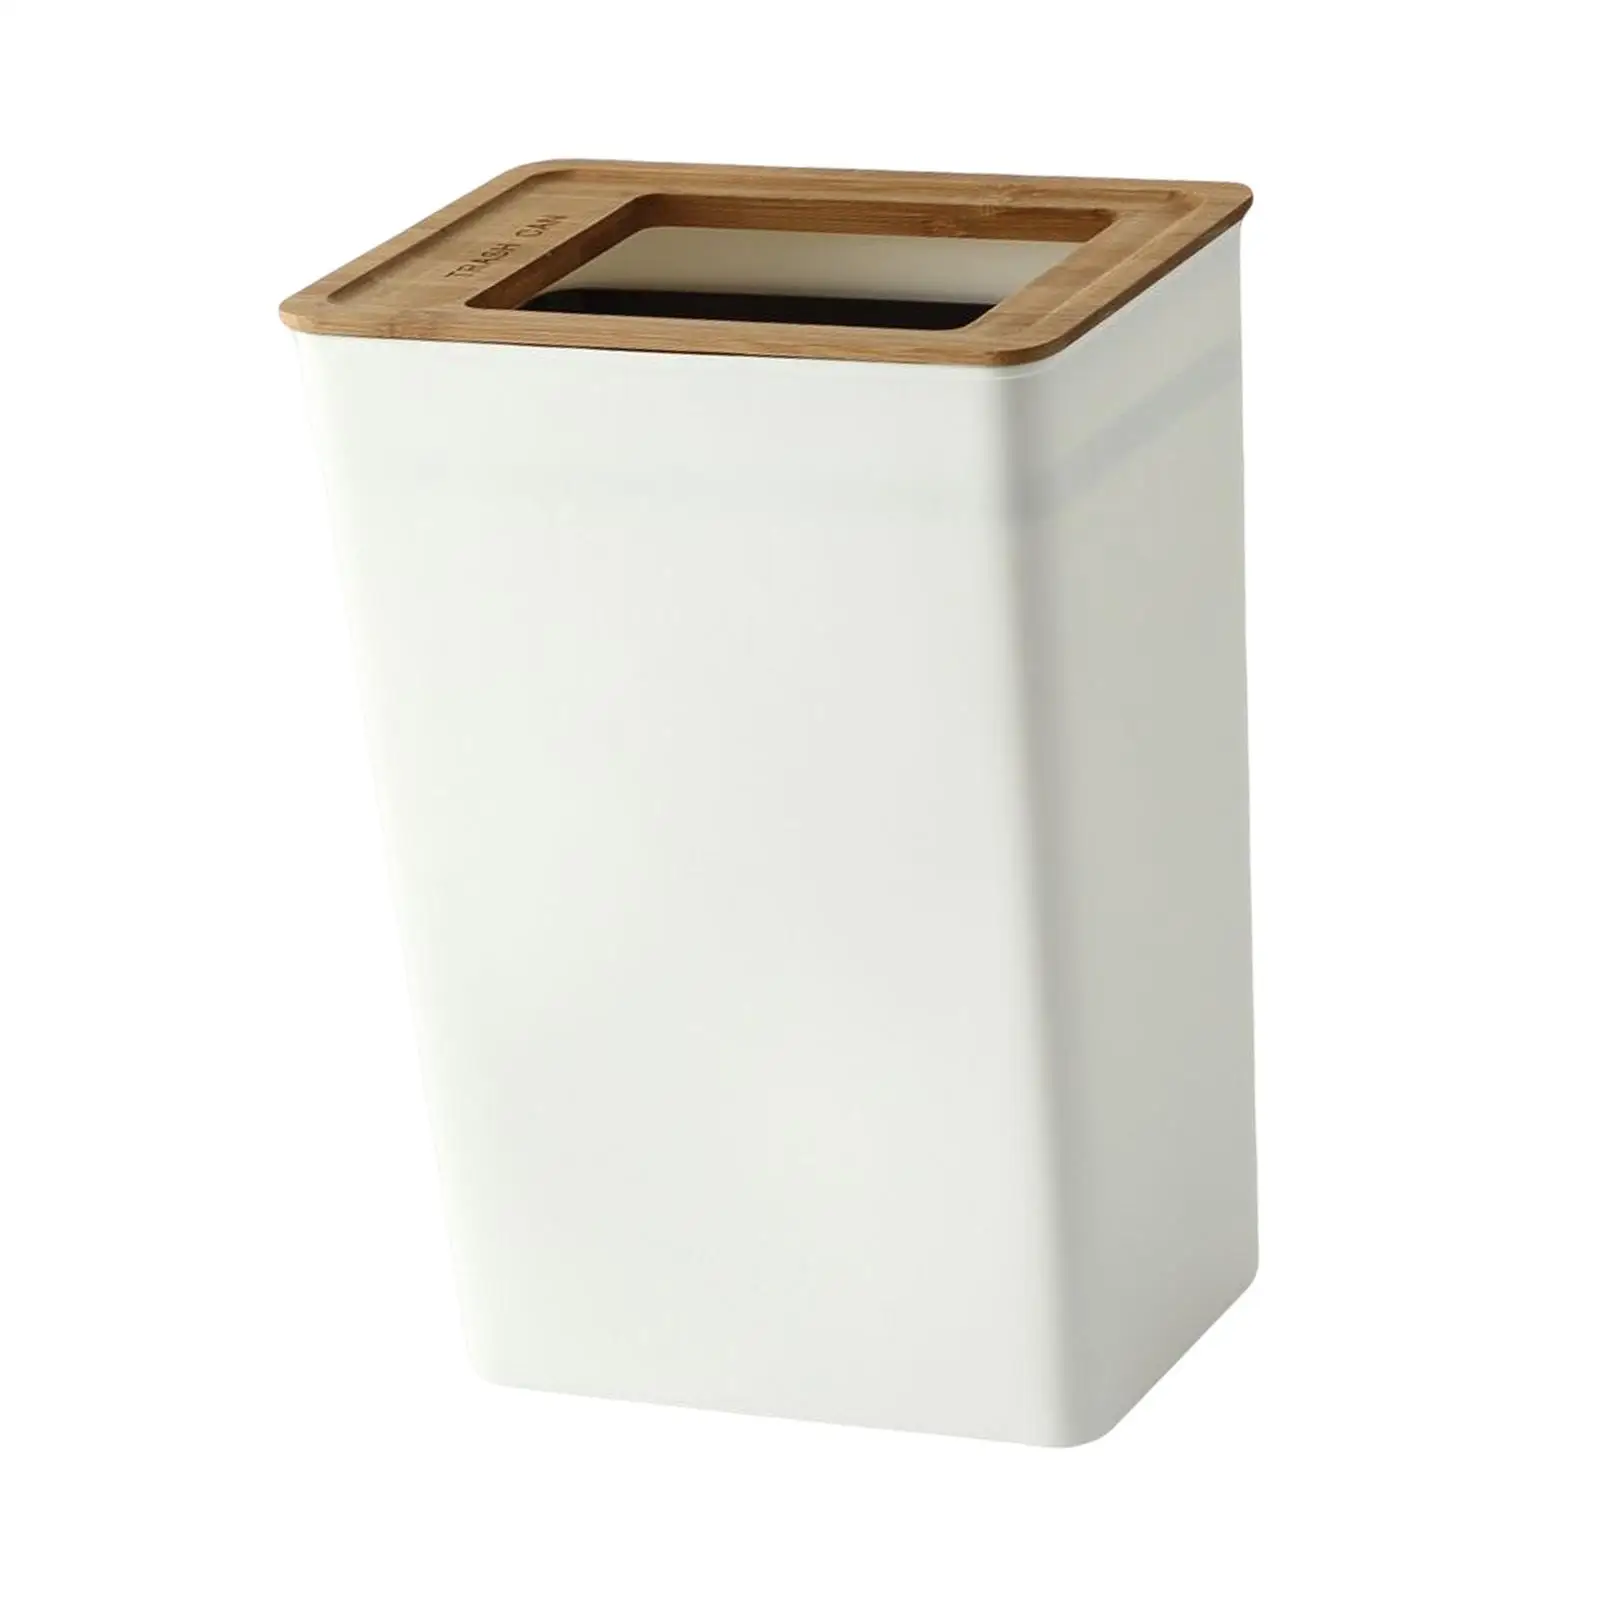 Rectangular Trash Can Garbage Container Bin for Indoor Outdoor Bedroom